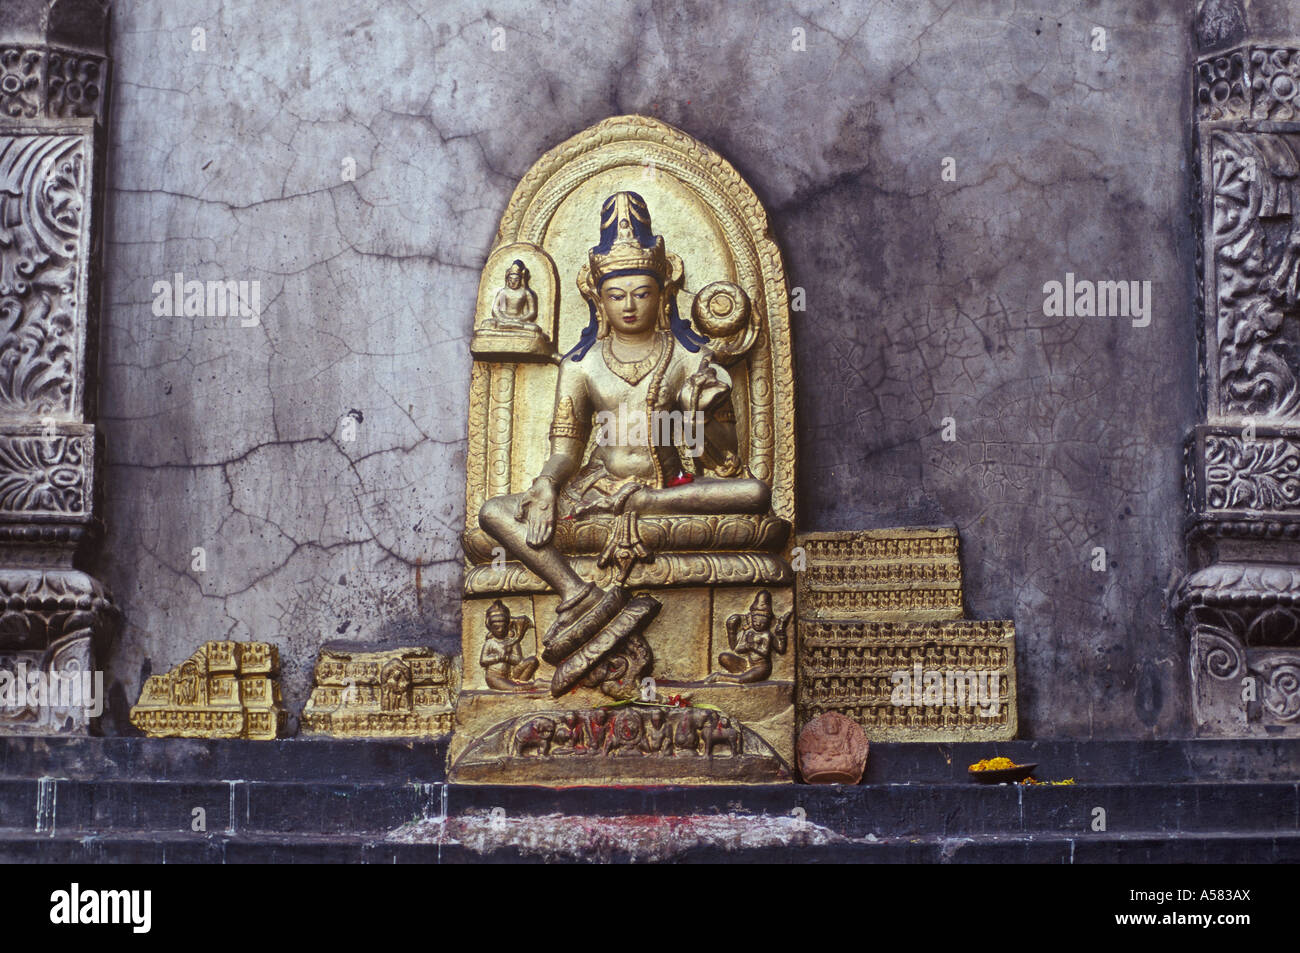 L'une des nombreuses images de Bouddha sur la façade de l'Mahabodhi-Temple, Bodhgaya, Bihar, Inde Banque D'Images